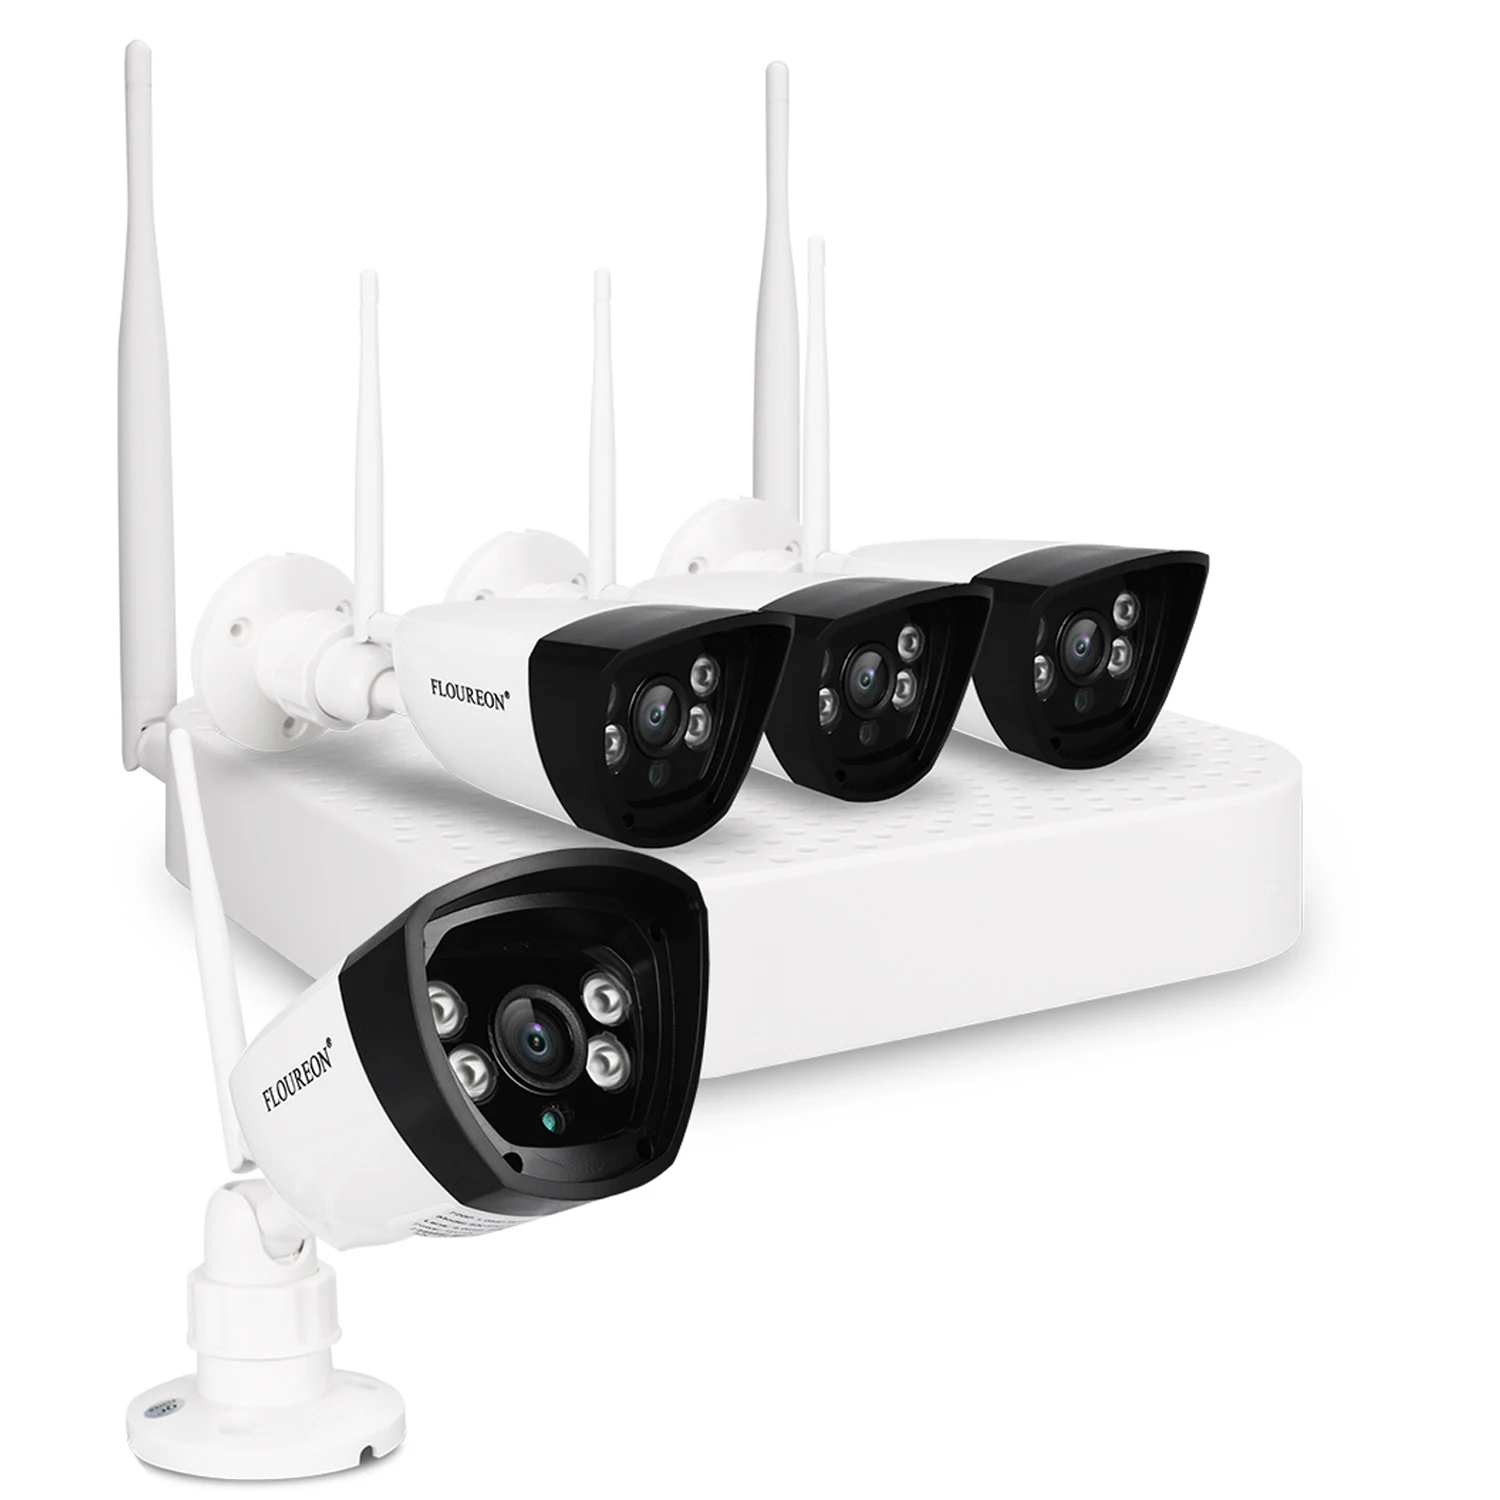 Floureon 4CH беспроводной CCTV 1080P DVR комплект открытый wi-fi/WLAN 720P 1.0MP IP камера безопасный видеорегистратор система NVR EU - Цвет: Black White